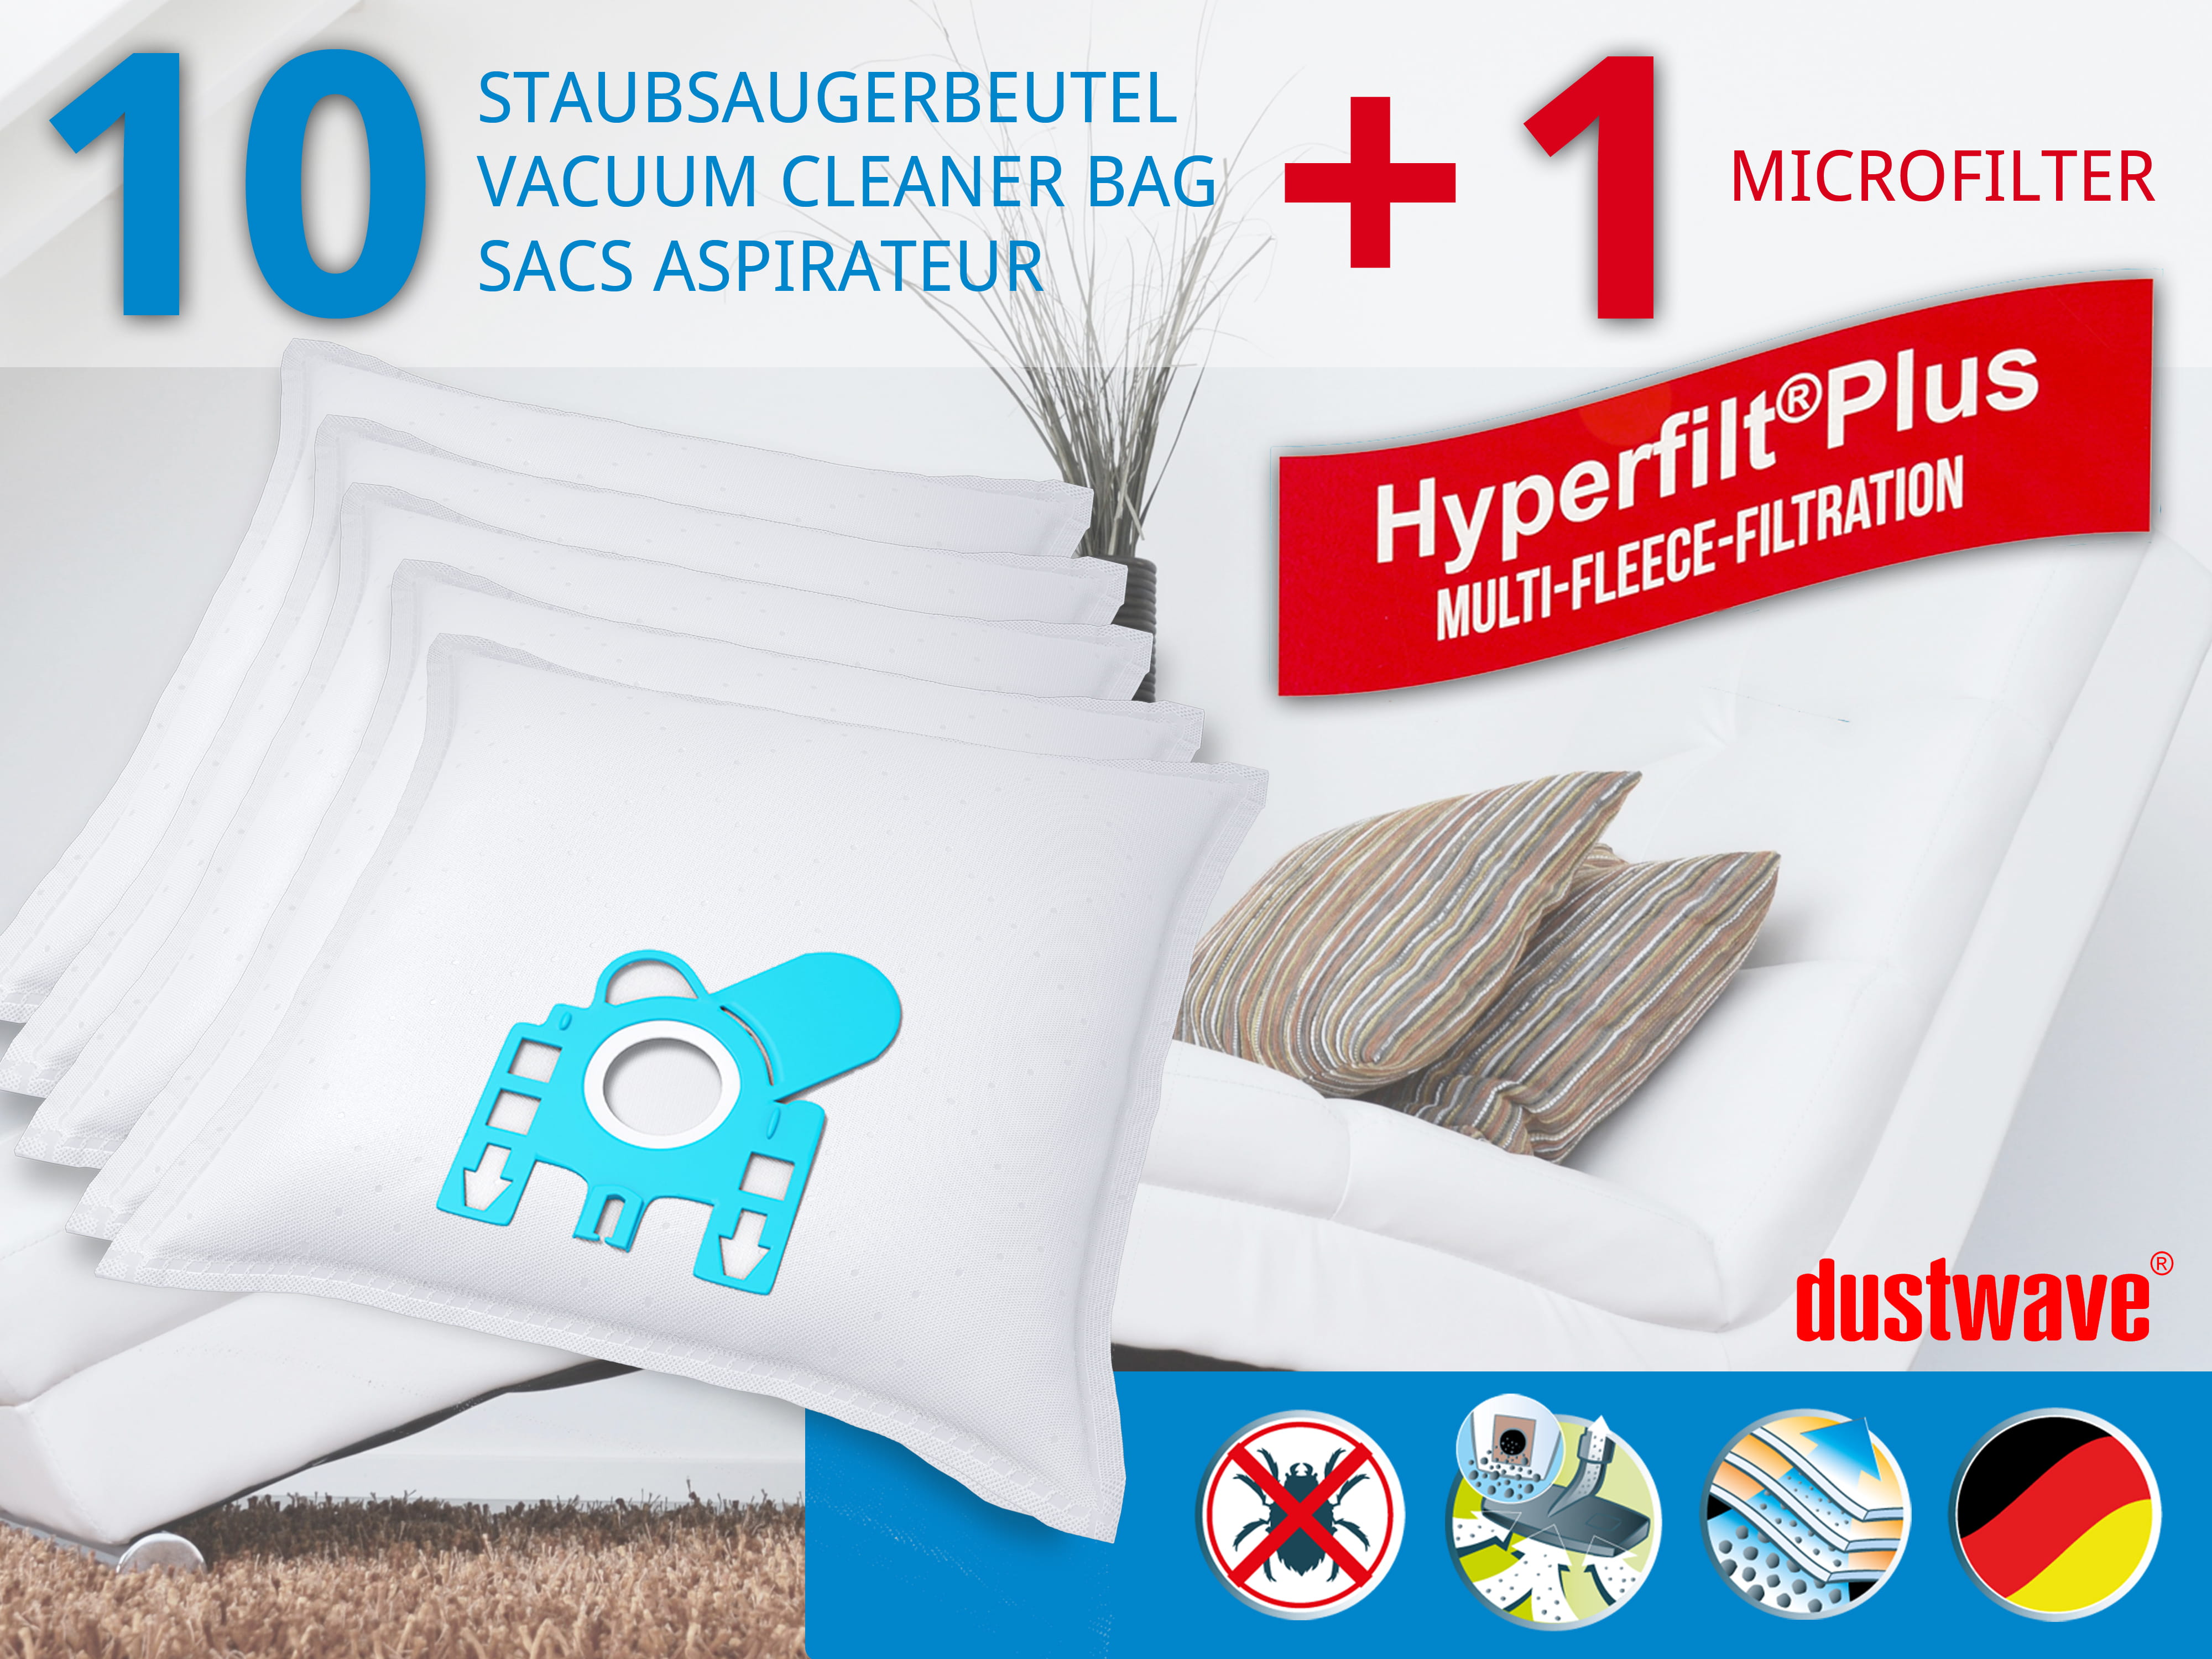 Dustwave® 10 Staubsaugerbeutel für Hoover Micropower 1300 - hocheffizient, mehrlagiges Mikrovlies mit Hygieneverschluss - Made in Germany